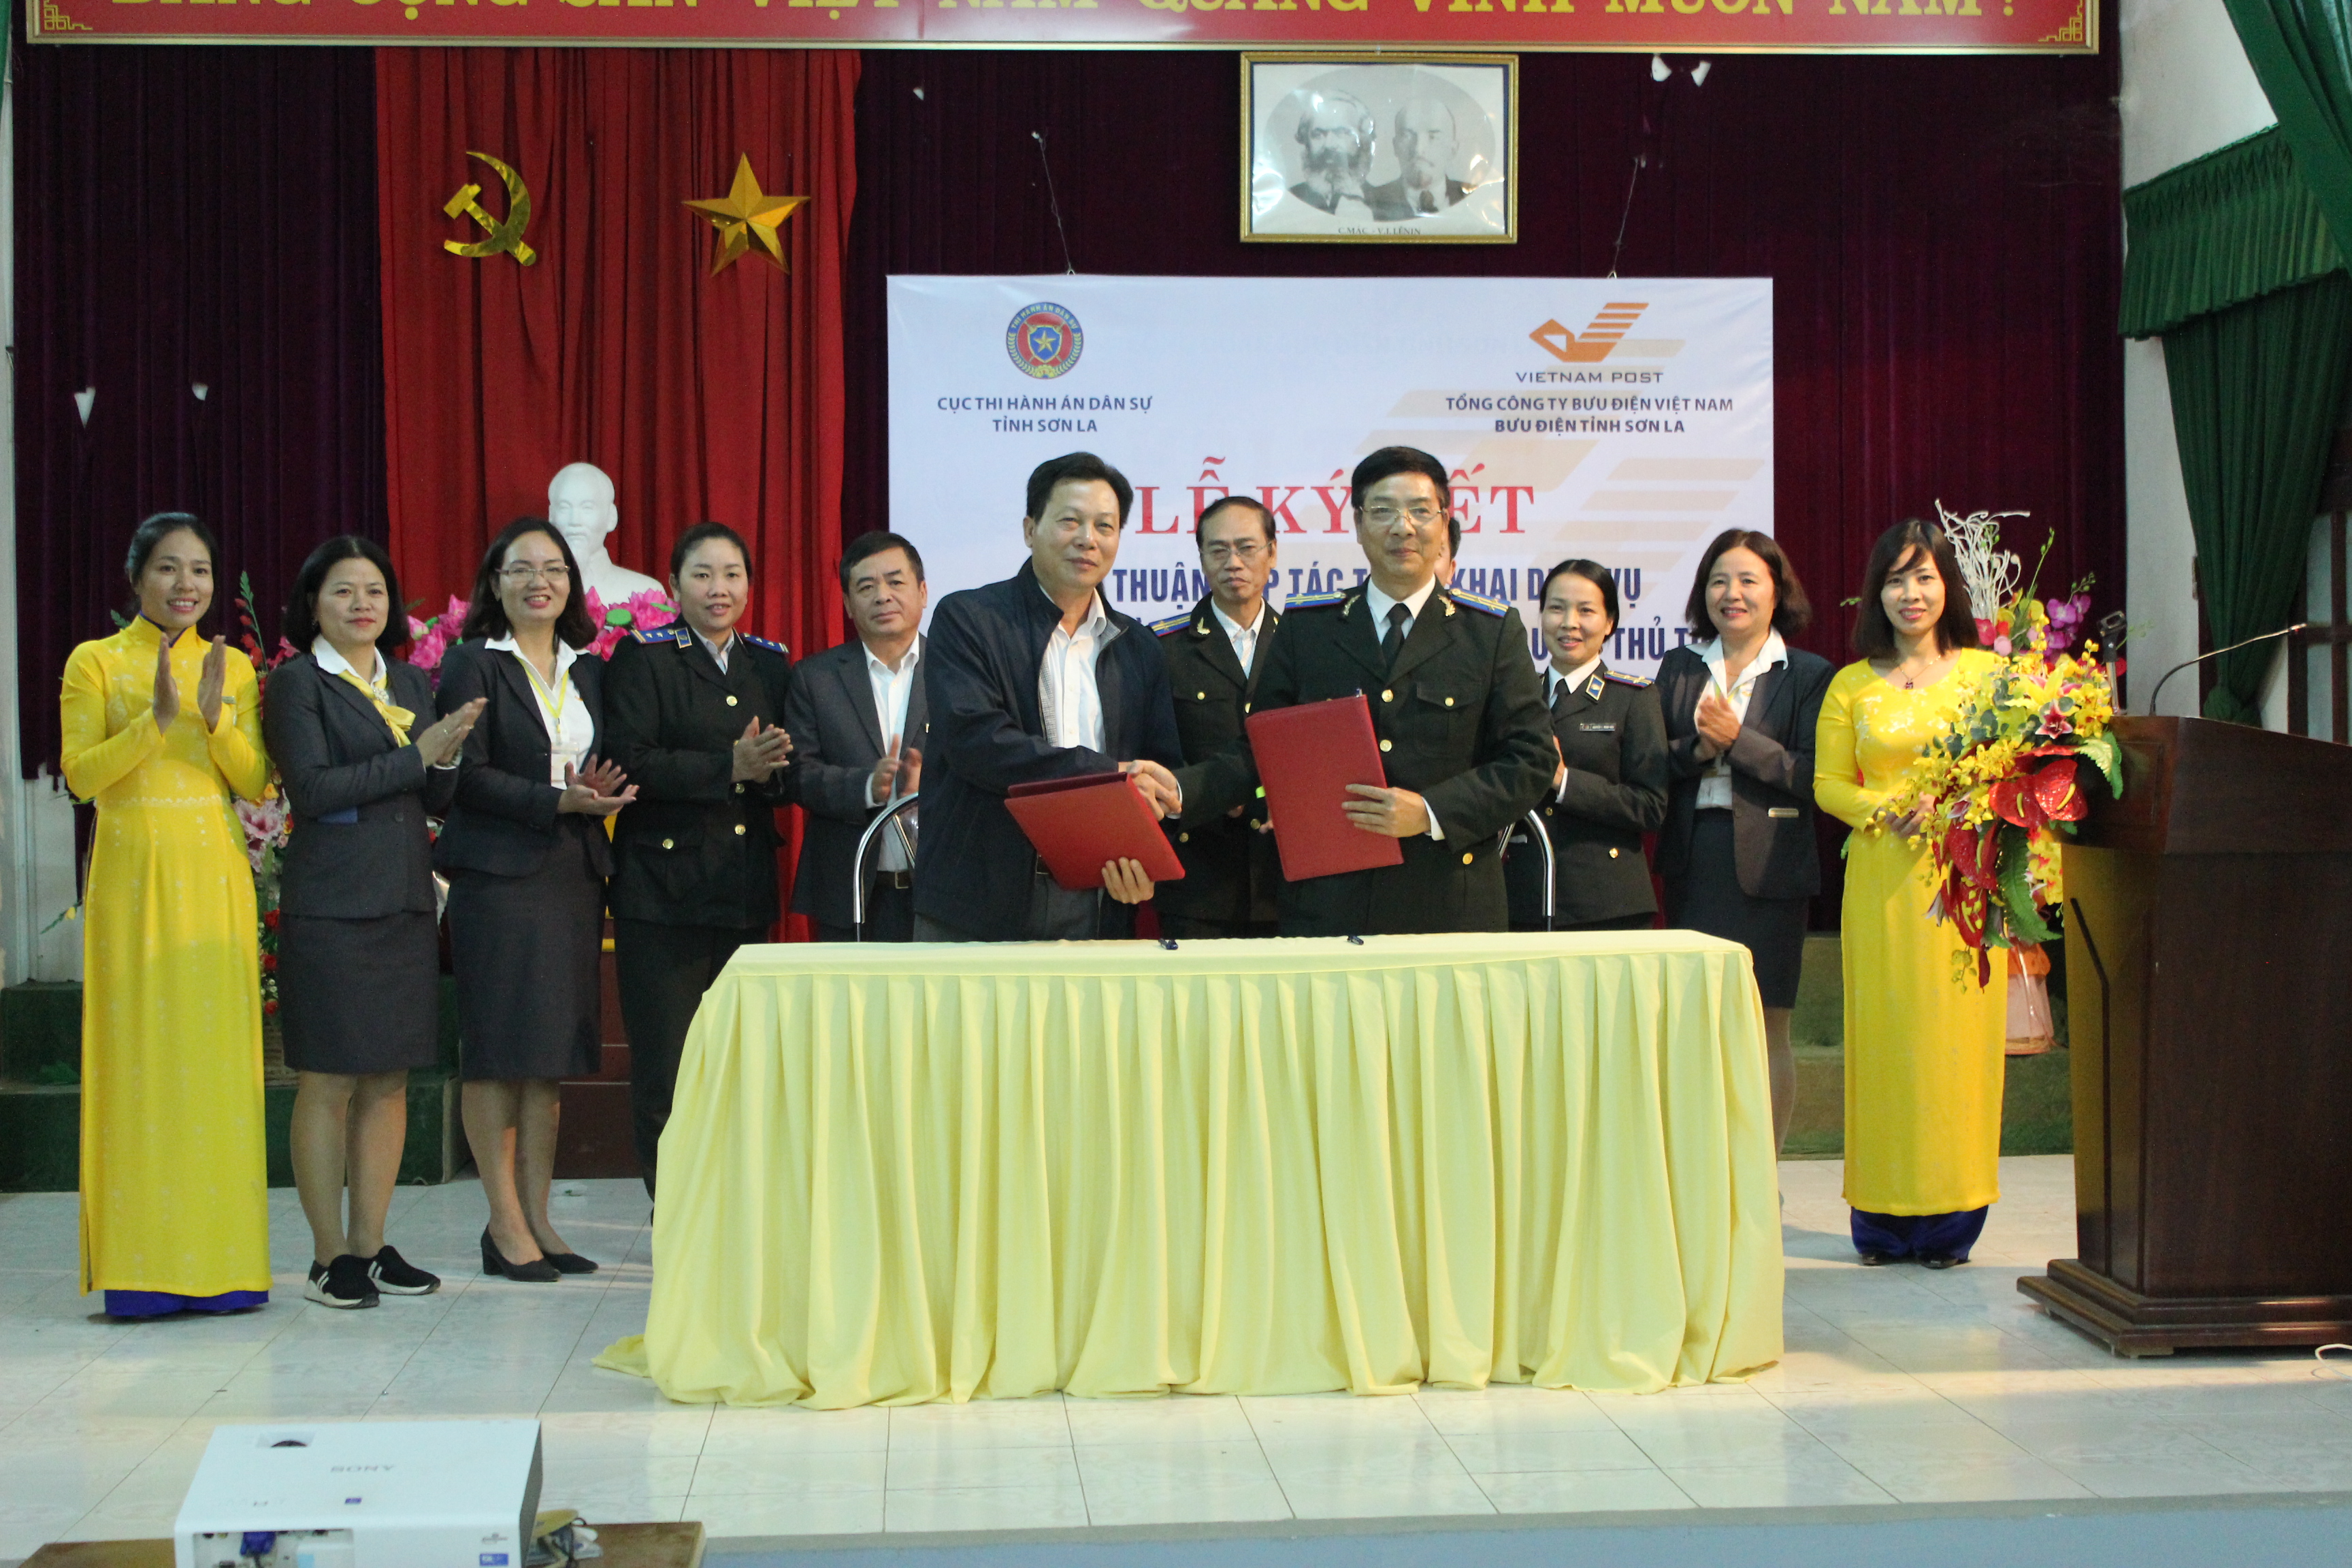 Cục THADS tỉnh Sơn La và Bưu điện tỉnh Sơn La ký kết thỏa thuận hợp tác tiếp nhận hồ sơ, trả kết quả giải quyết thủ tục hành chính qua dịch vụ bưu chính công ích trong lĩnh vực THADS